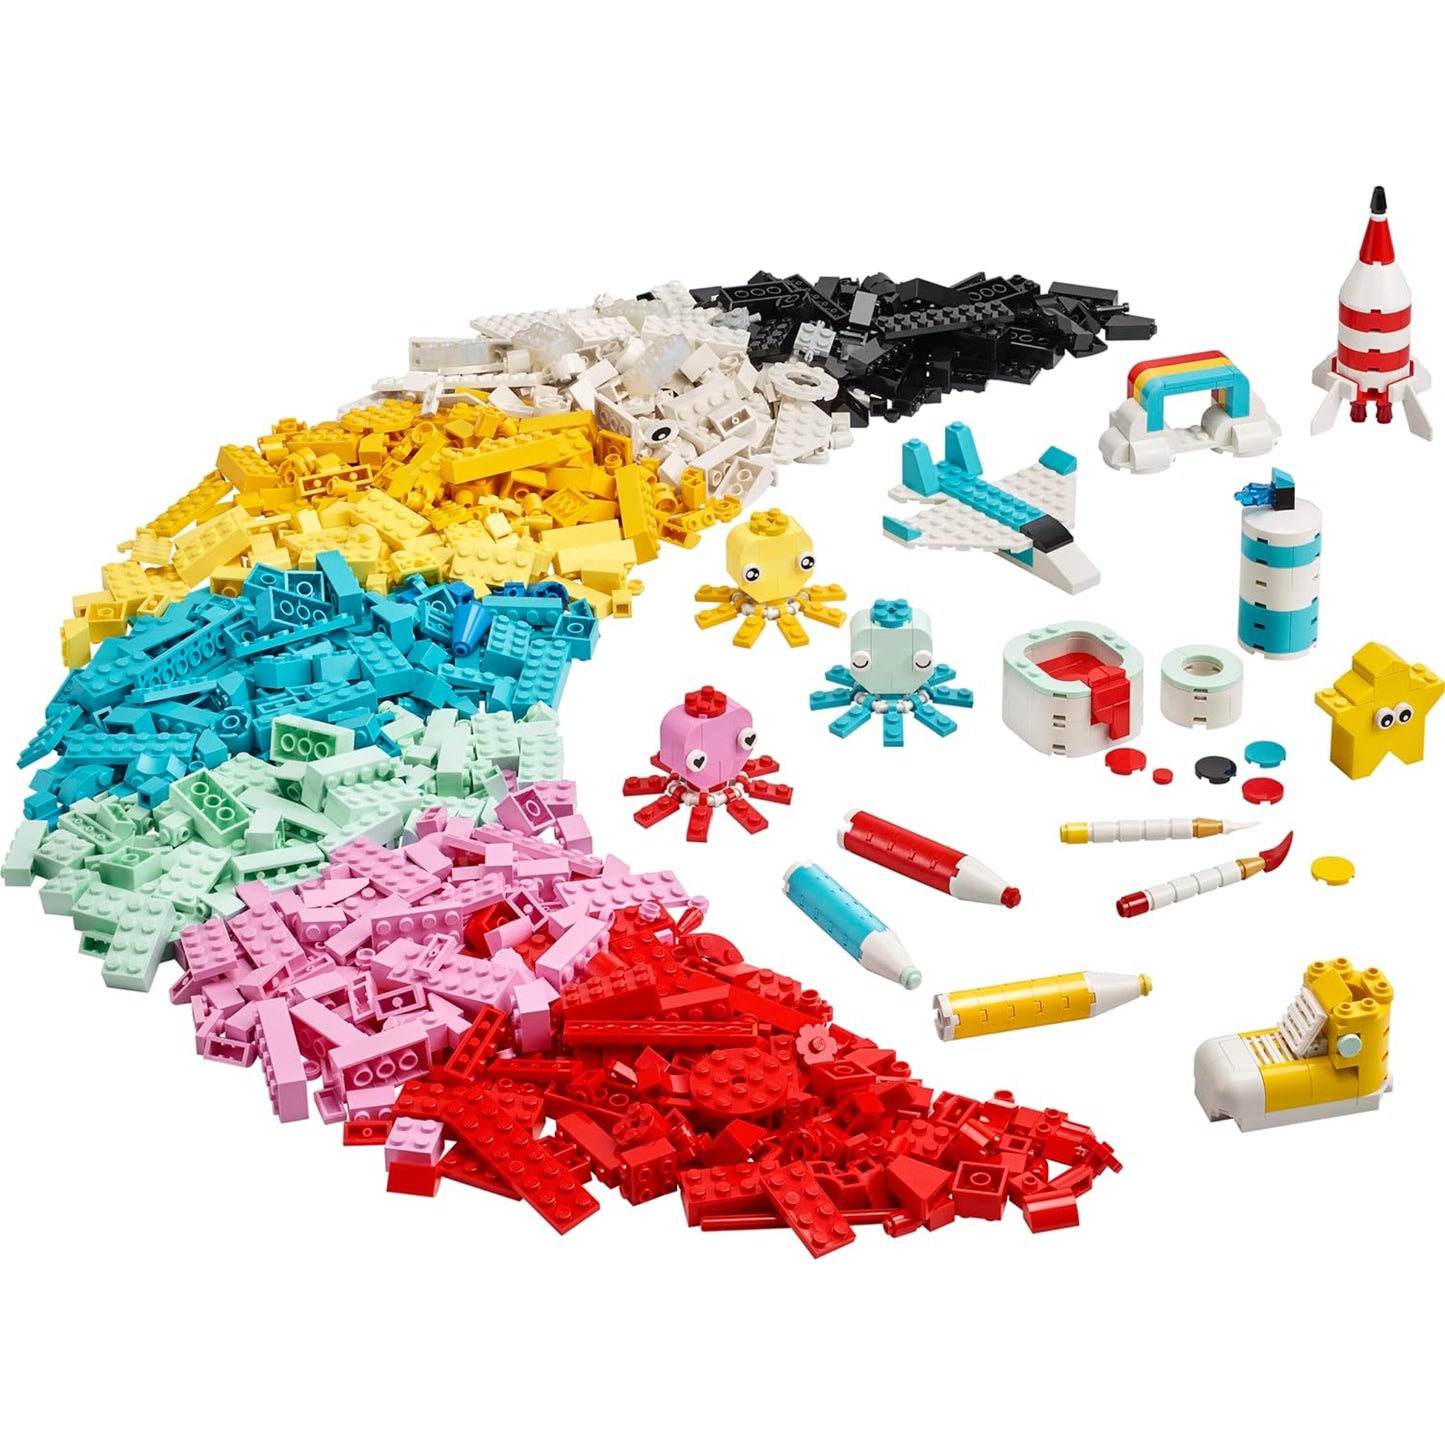 Lego Classics - 1500 Pcs